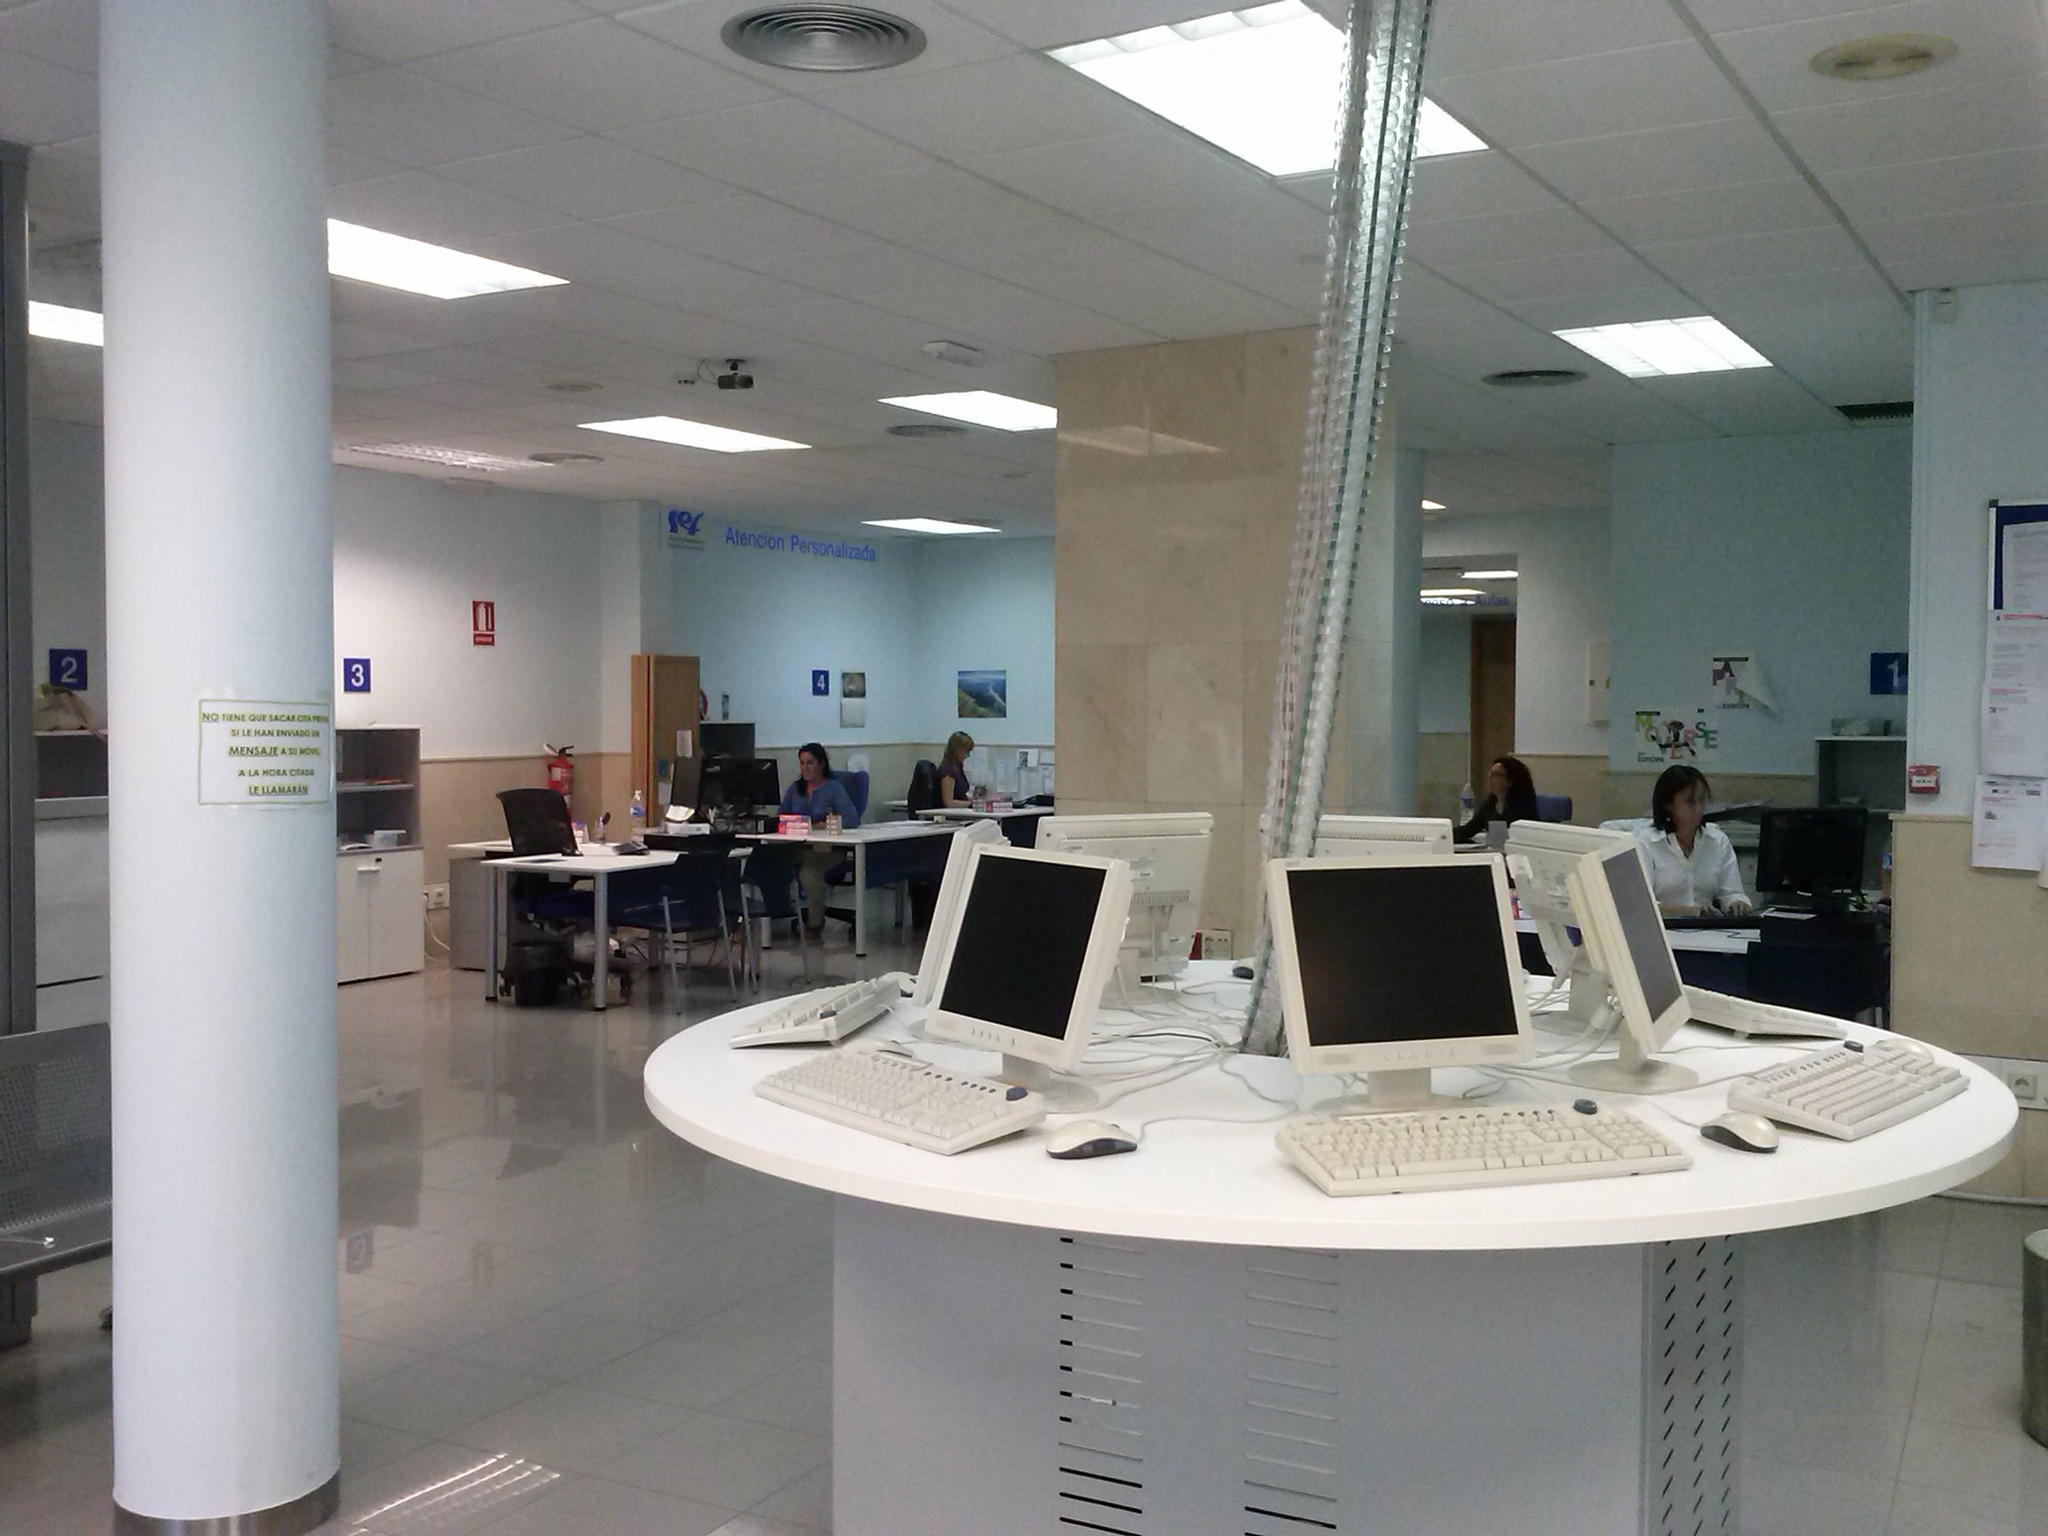 Espacio para el uso de Internet de desempleados en una oficina del Servicio Regional de Empleo y Formación de Murcia